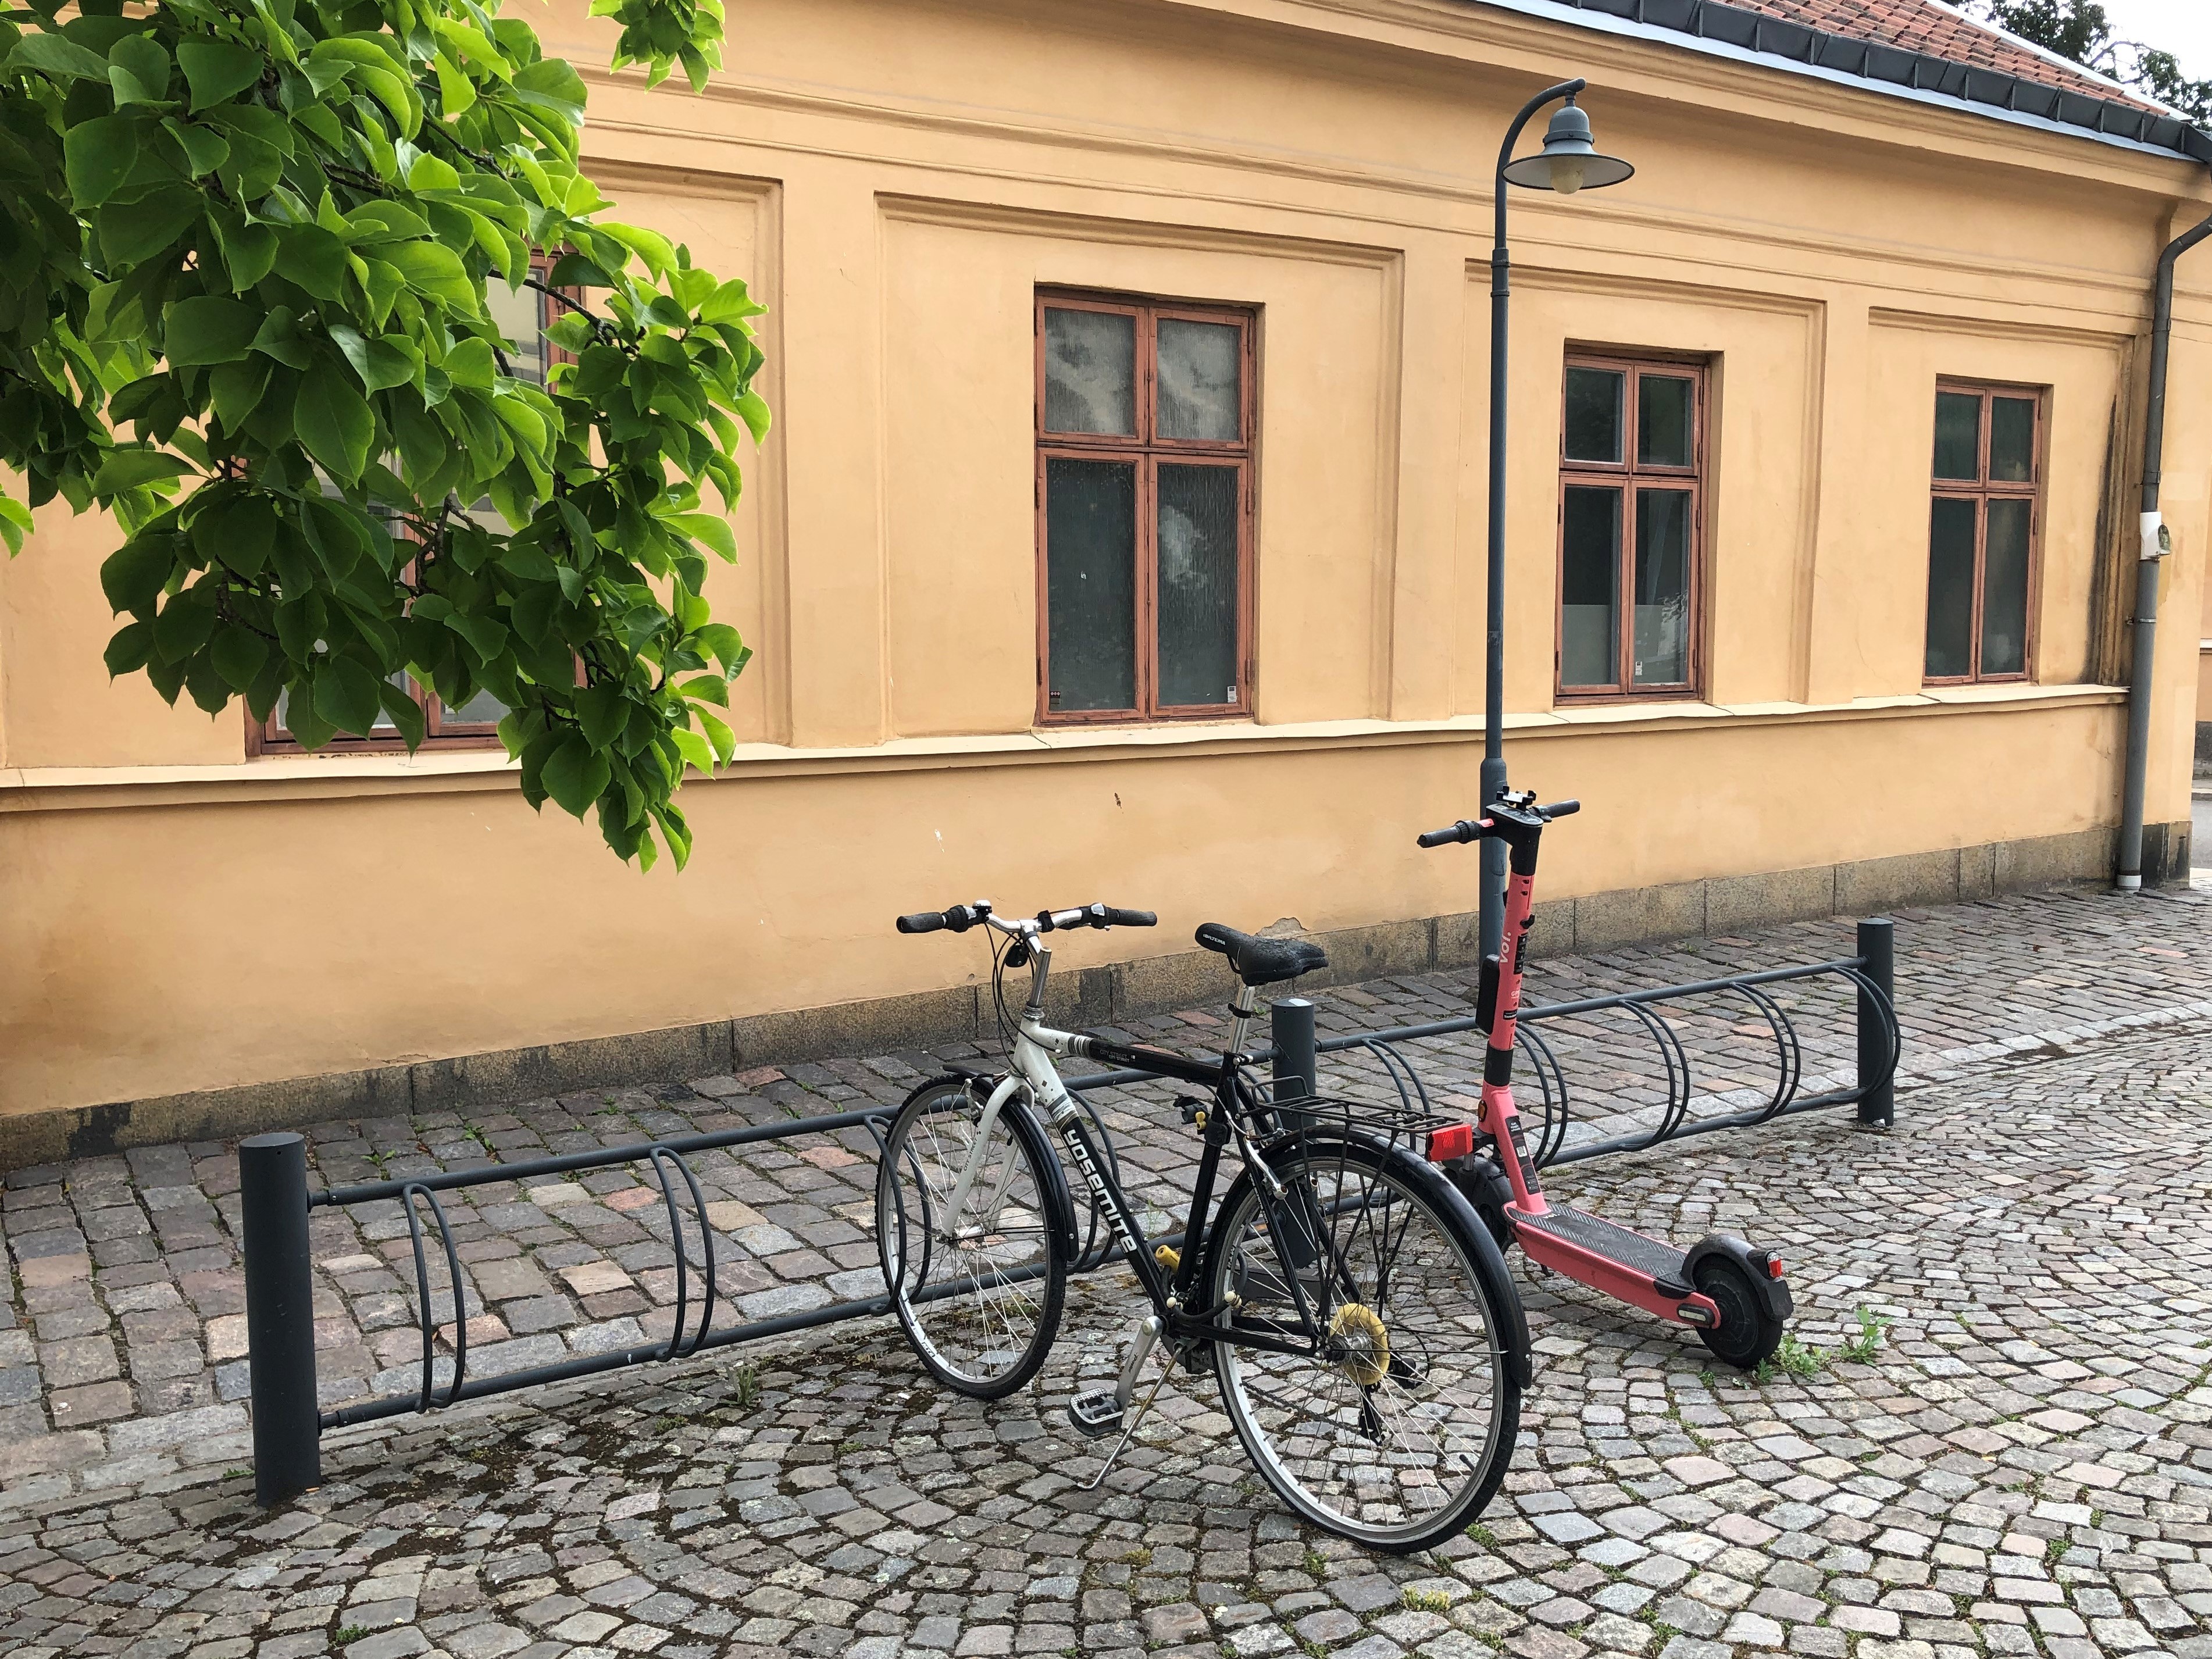 Cykelställ med vanlig cykel och elsparkcykel parkerade.